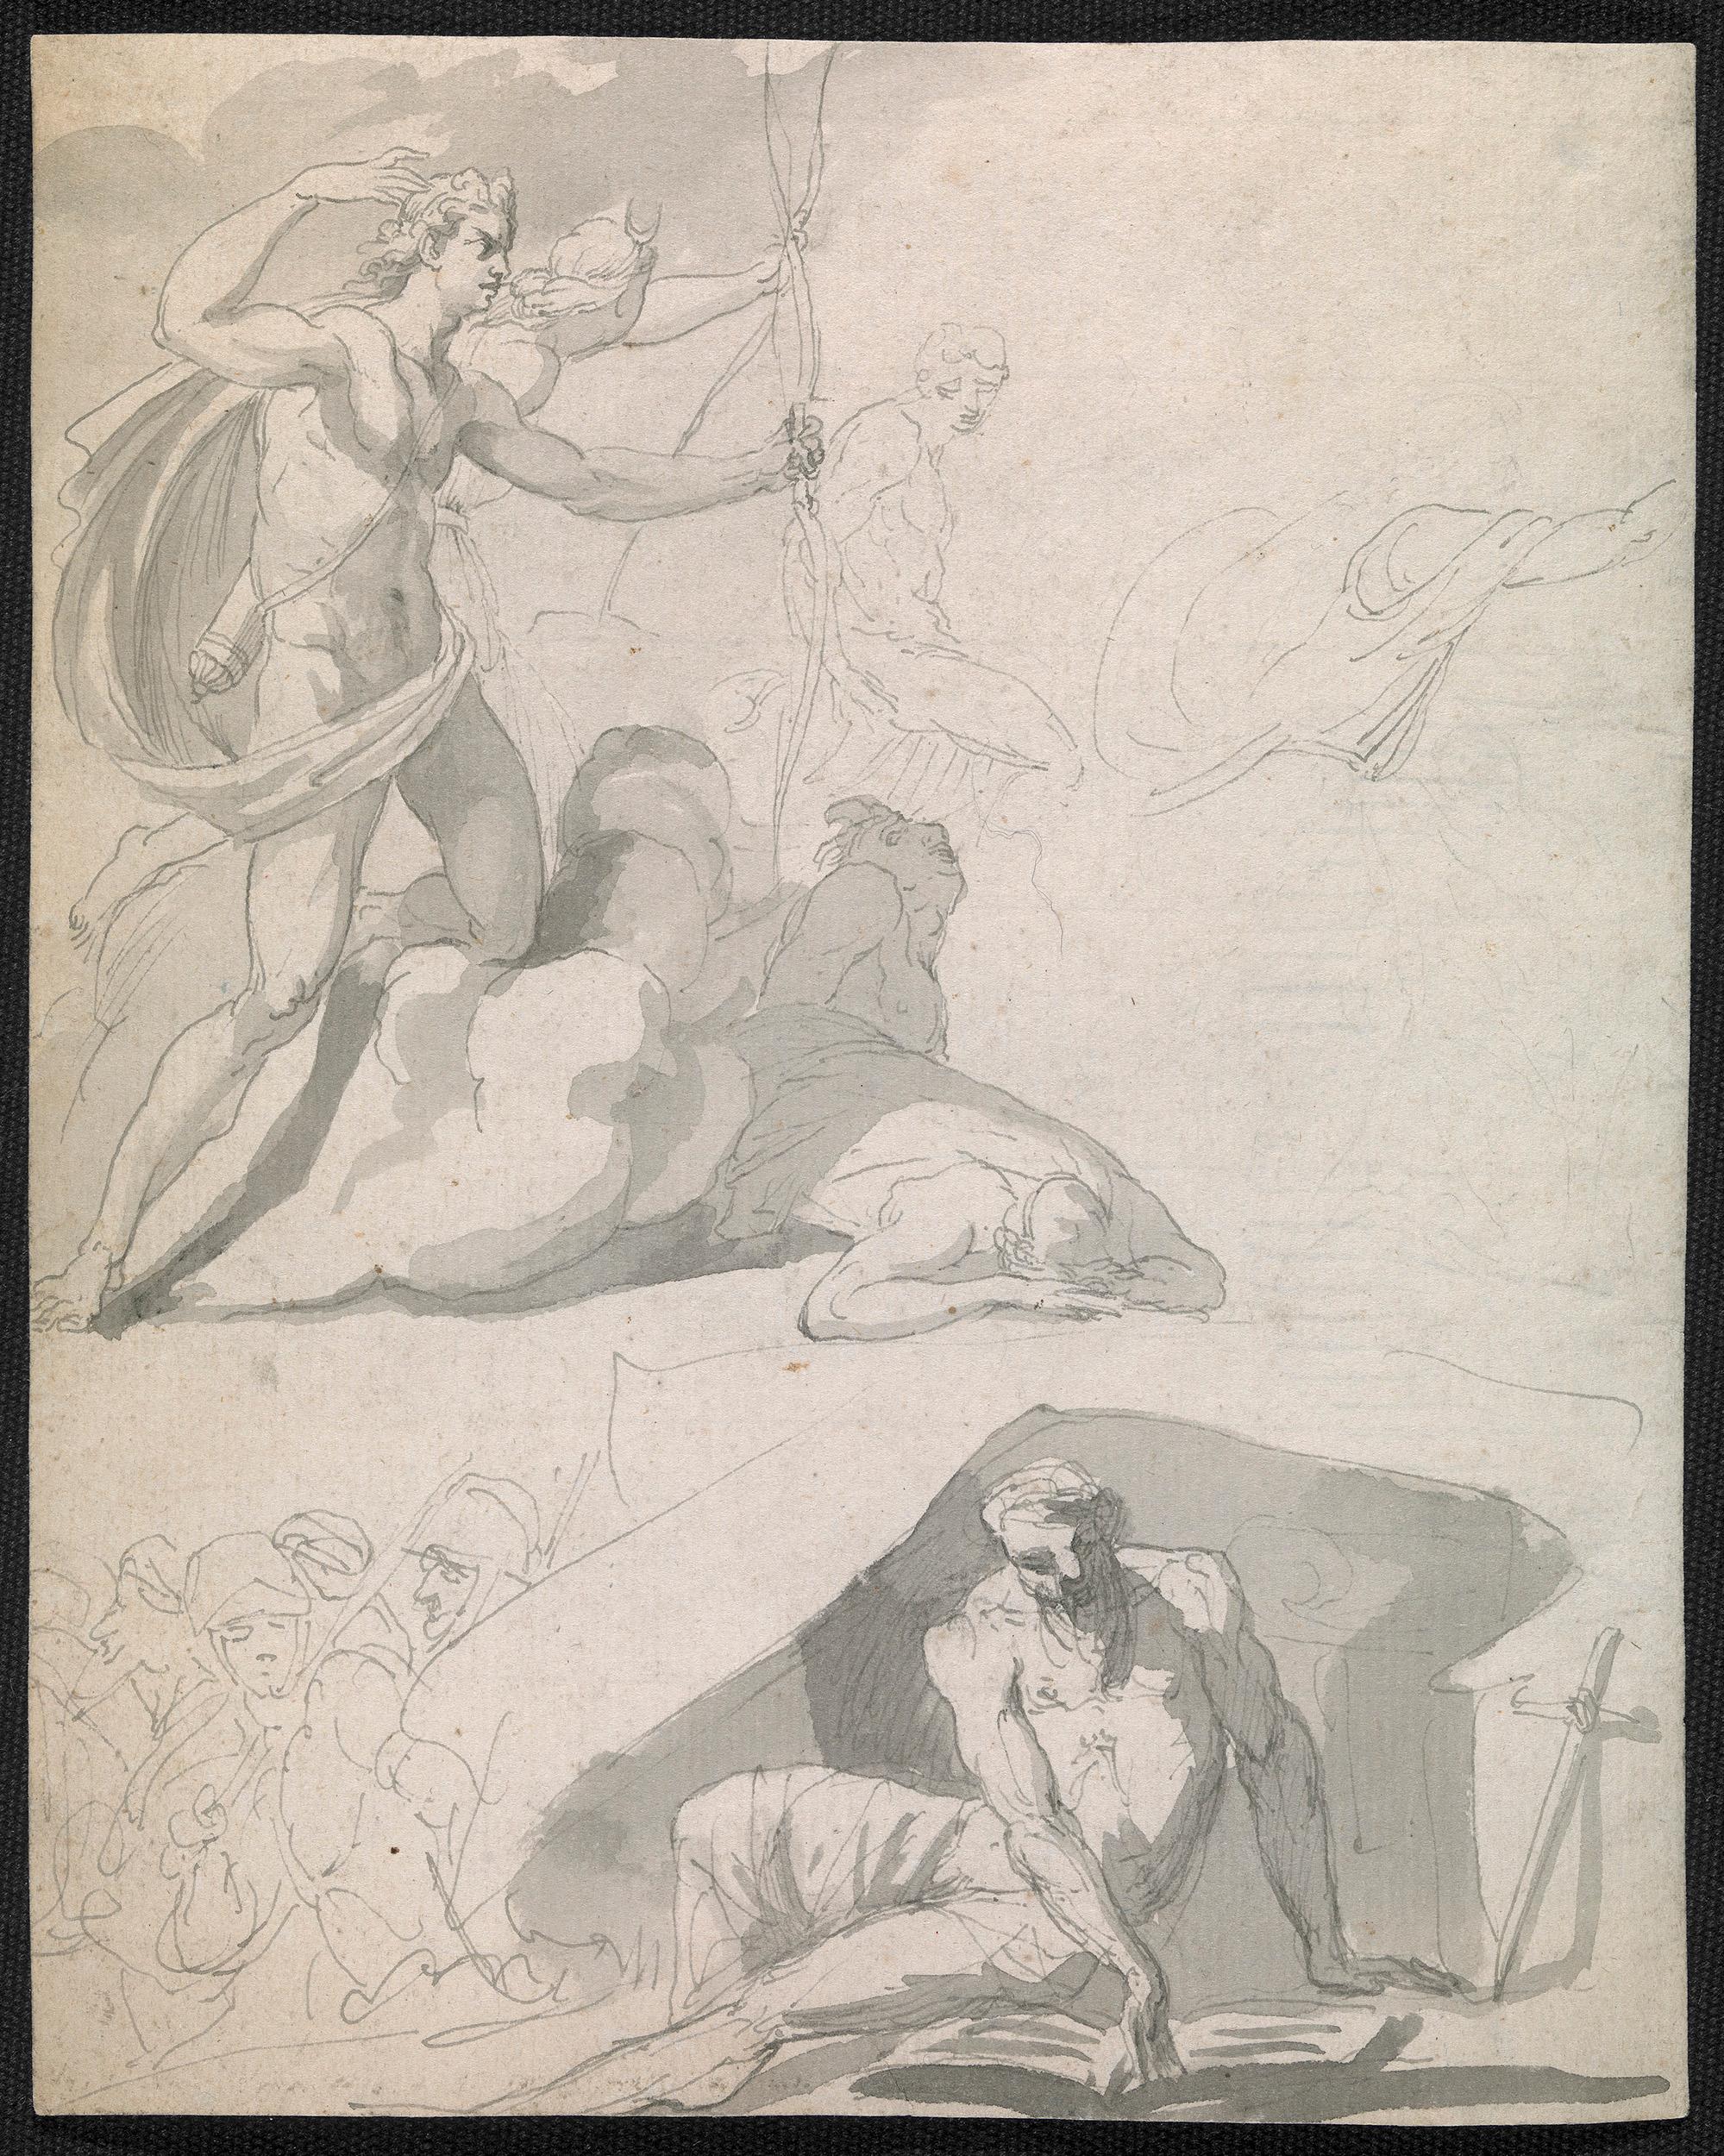 Zeichnung eines alten Meisters aus dem achtzehnten Jahrhundert - Apollo zerstört die Kinder von Niobe